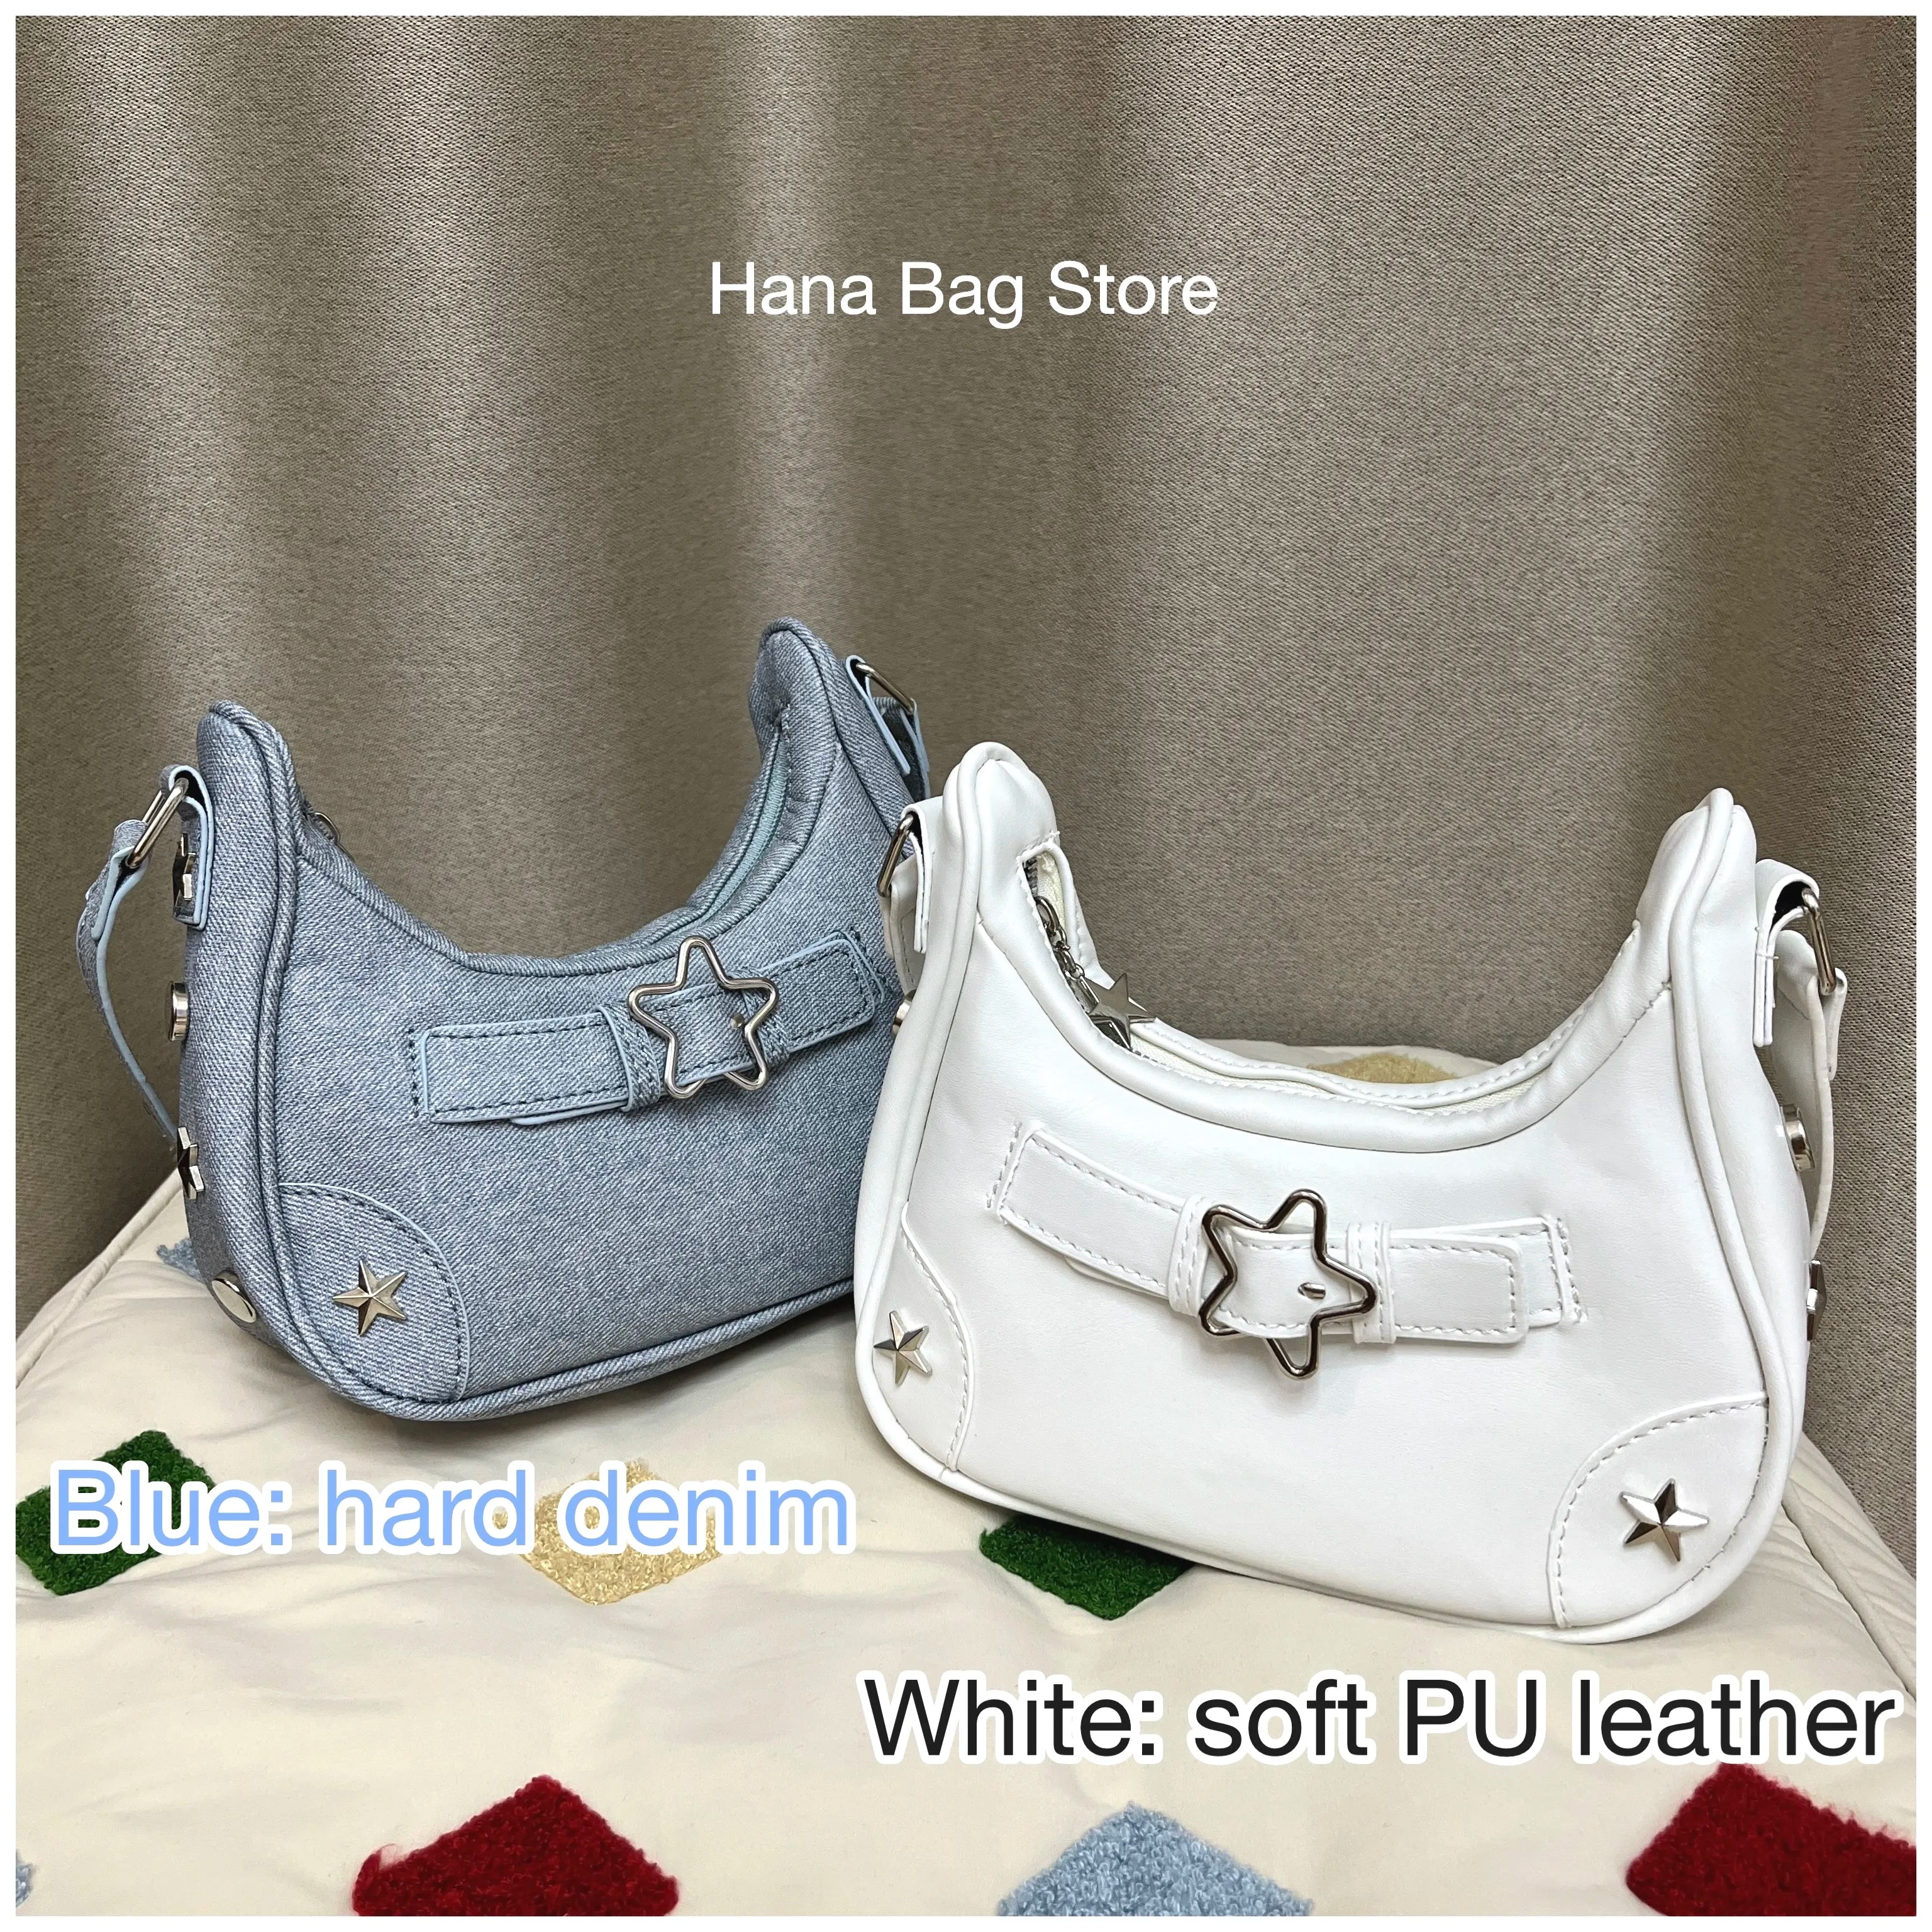 Cyflymder Vintage Star Handbags for Women Fashion Hobos Shoulder Underarm Bag Ladies Clutch Pu Leather Female Armpit Purses Y2k Cool Bag